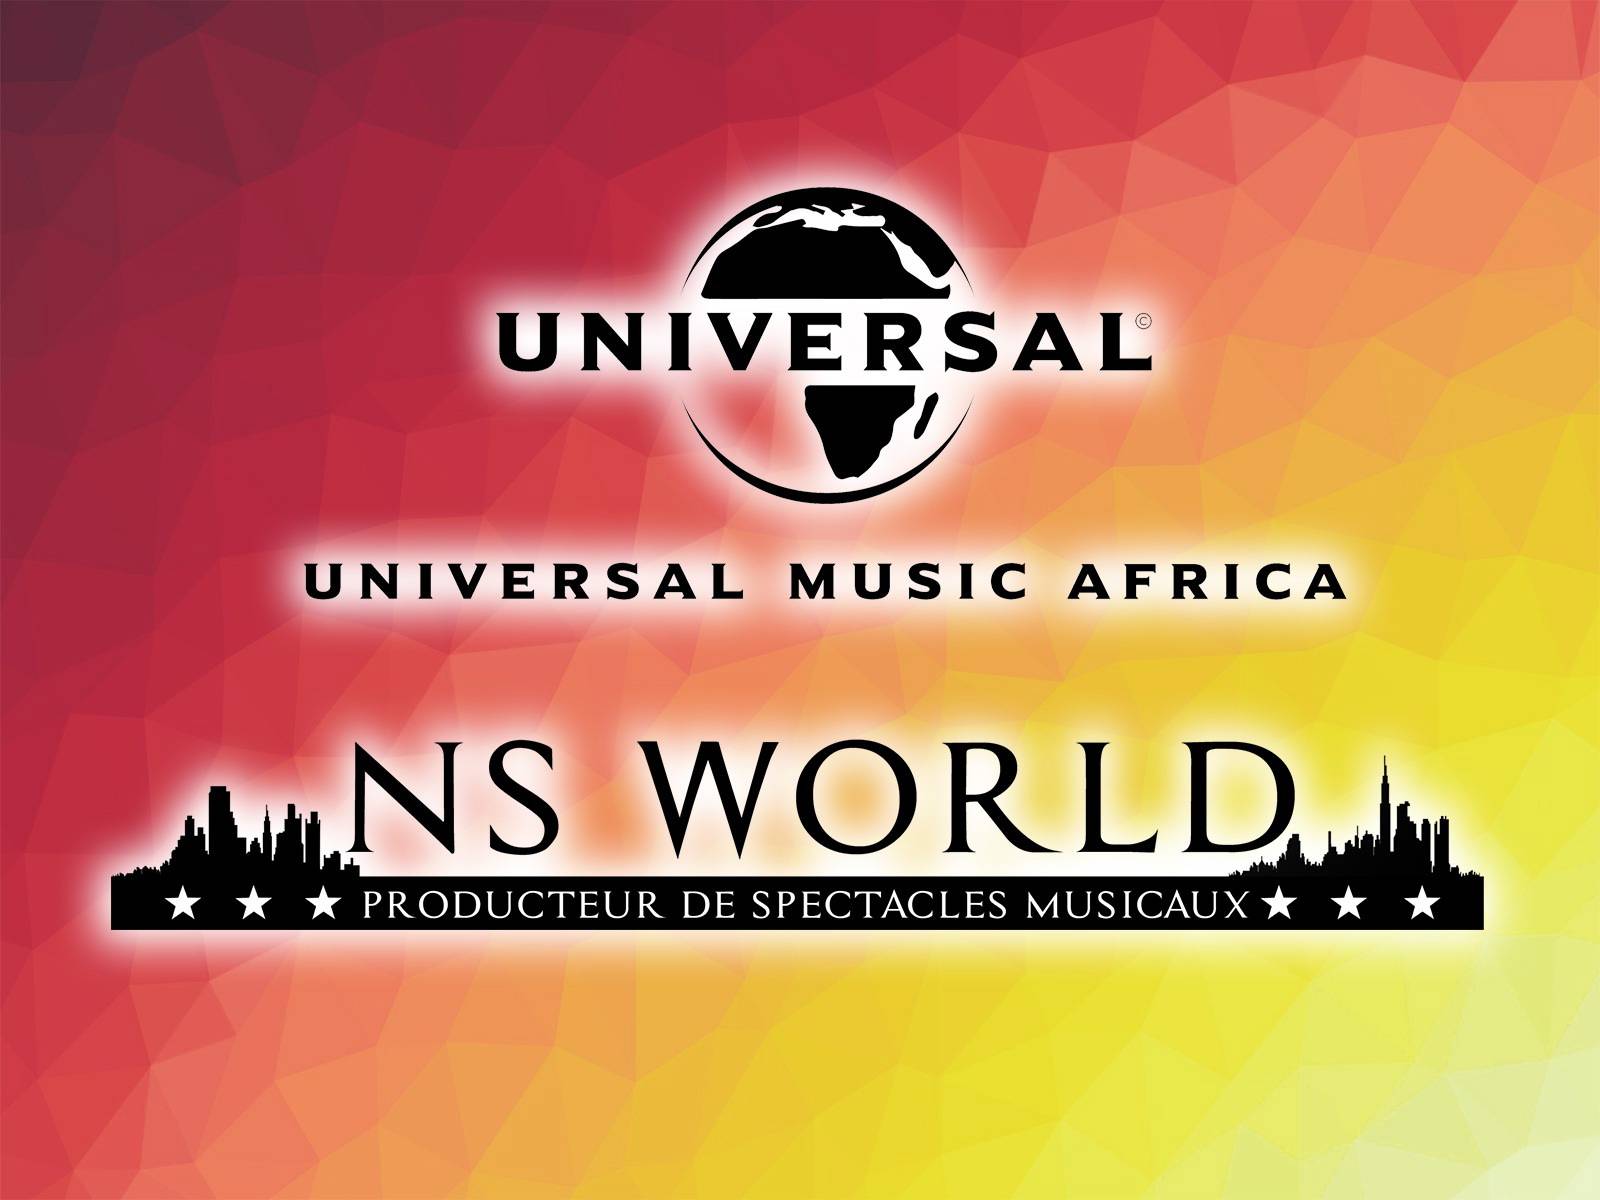 Ns World au delà des frontières, en collaboration avec Universal Music Africa